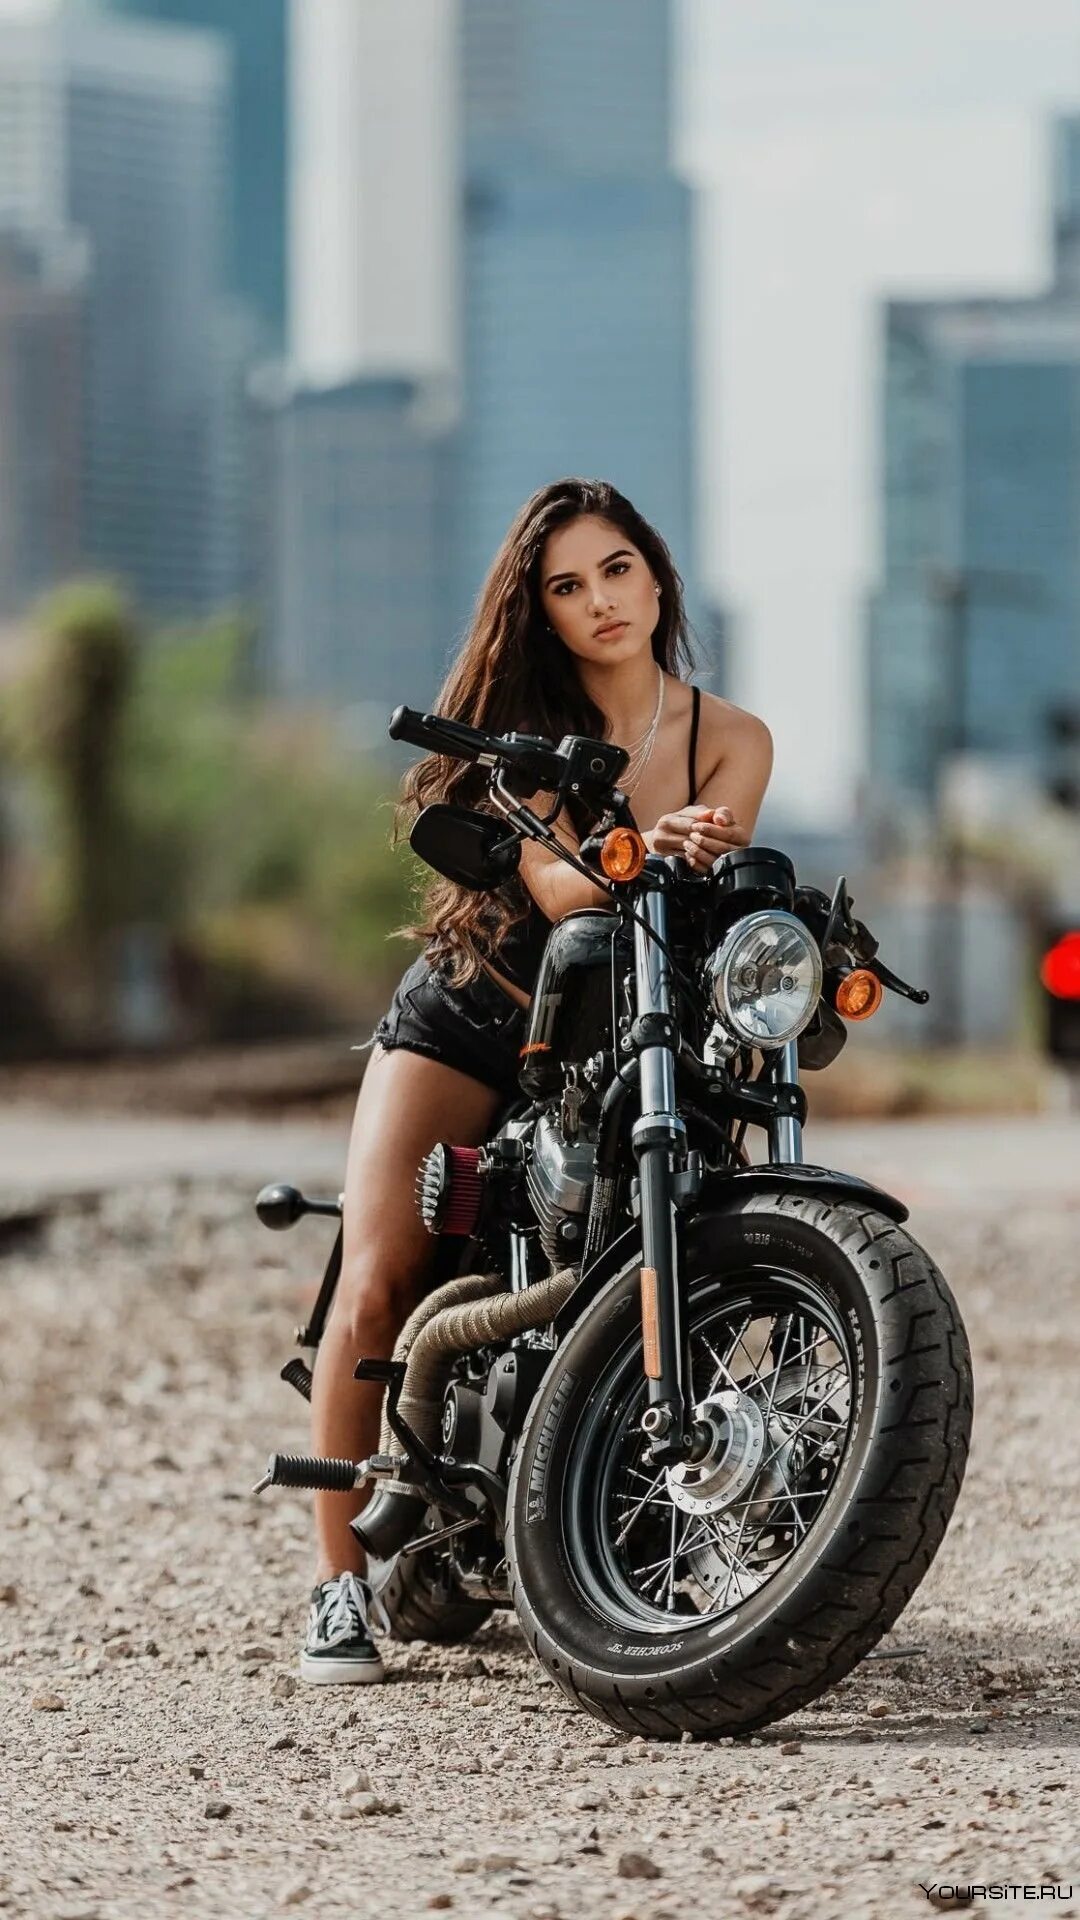 Девушка на мотоцикле. Фотосессия на мотоцикле девушки. Про девушку на мотоцикле